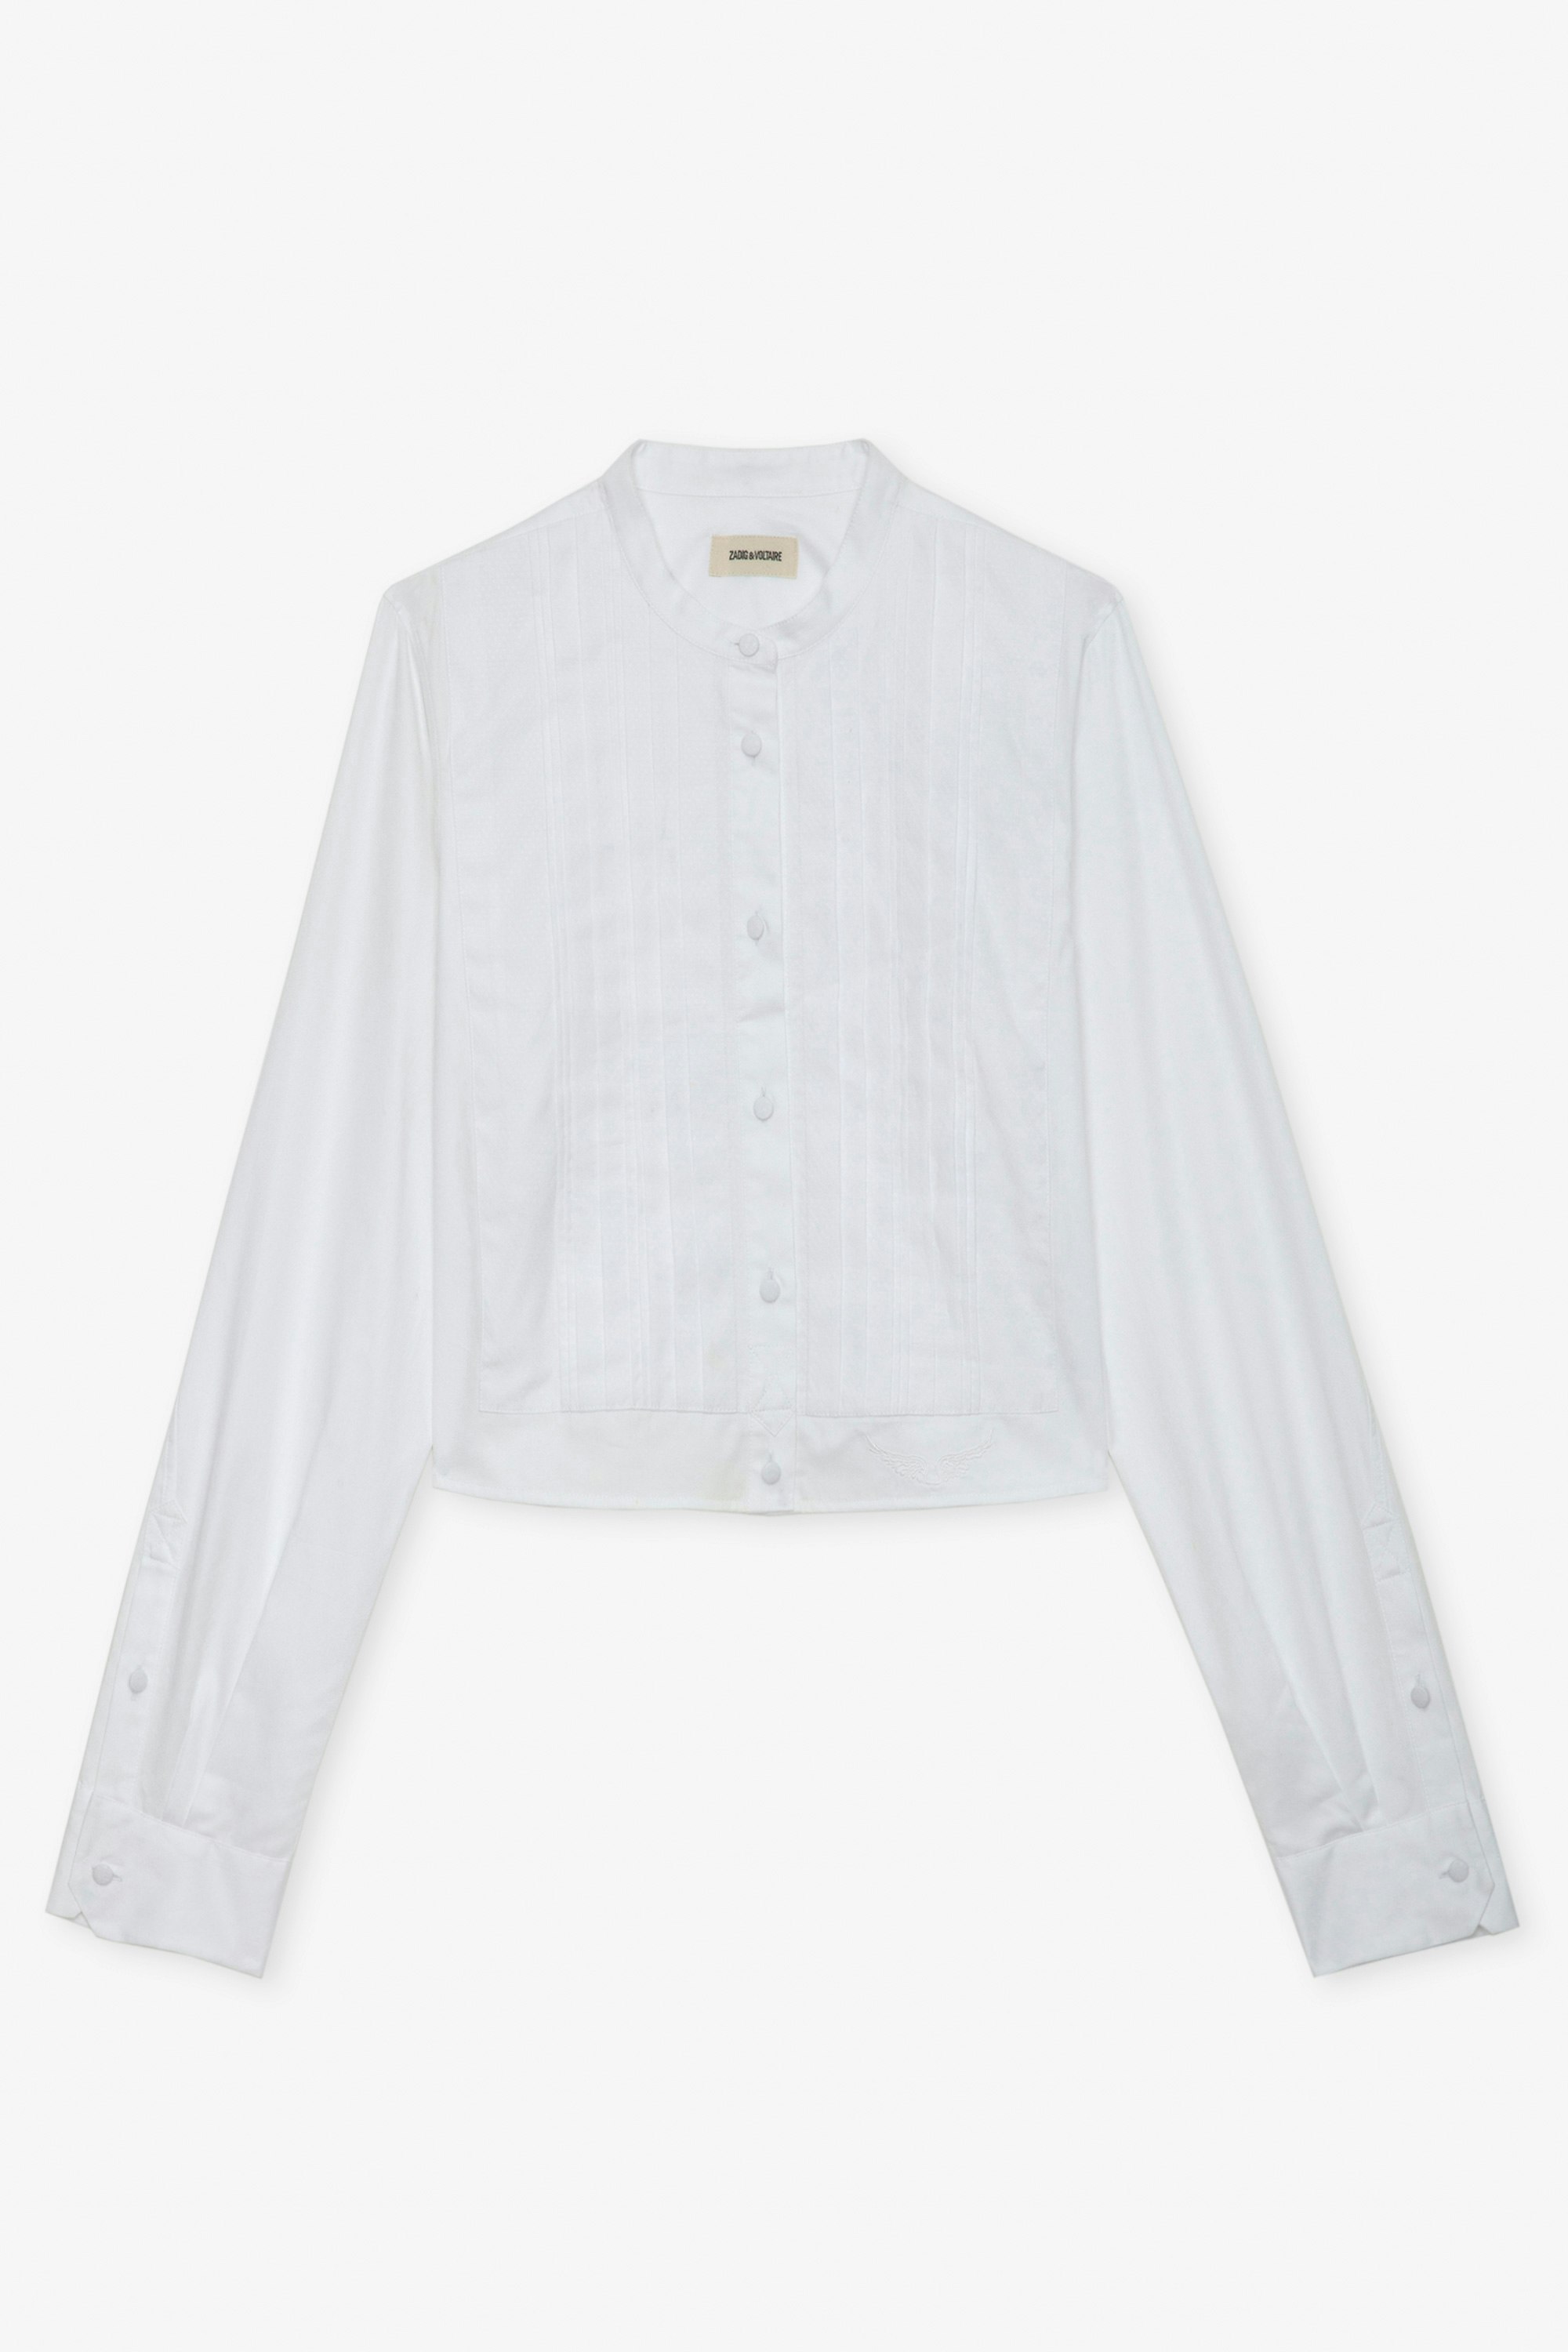 Hemd Theby - Kurzes, weißes Hemd aus Baumwolle mit Flügelstickerei und plissierten Details.